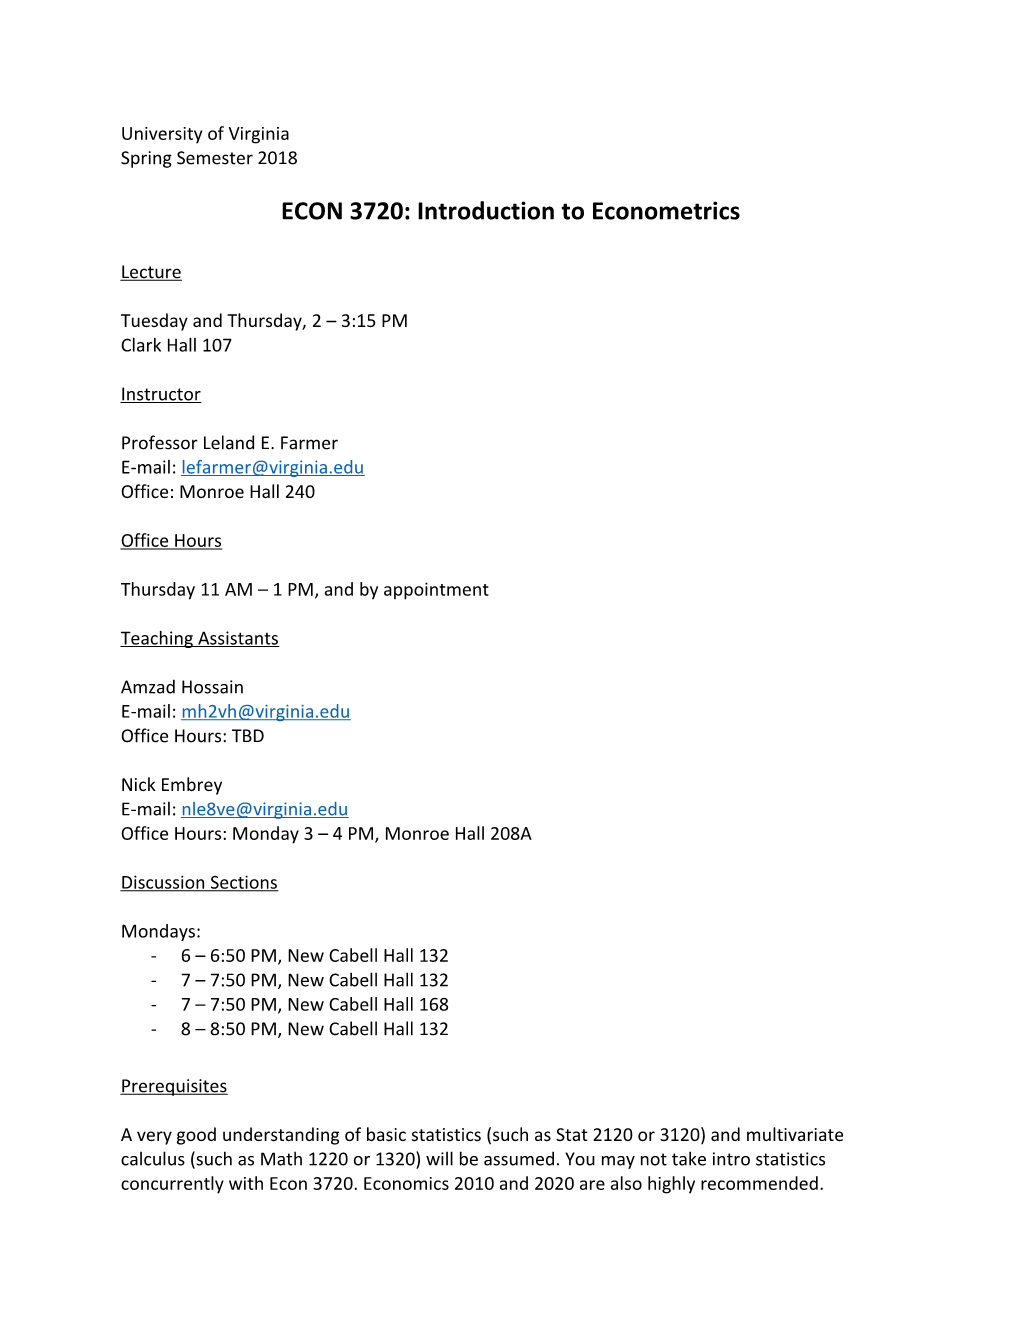 ECON 3720: Introduction to Econometrics